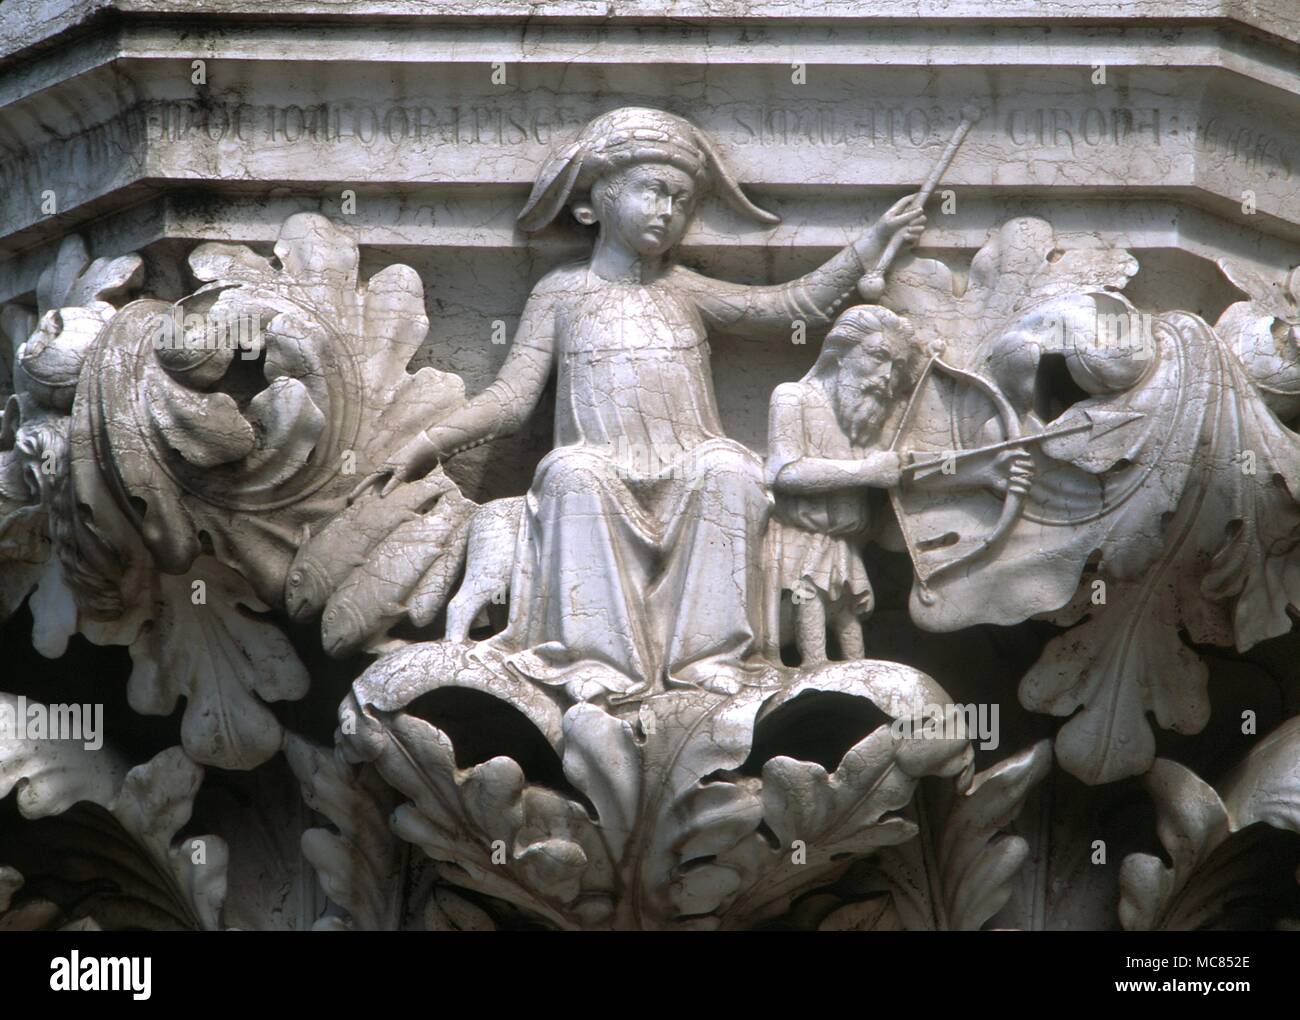 Astrología italiano personificación de Júpiter con su varita de oficina sentado en el Centaur zodiacal bowman (símbolo de Sagitario, sobre la cual tiene la regla) con los peces de acuario junto al lugar del Dogo de Venecia Foto de stock